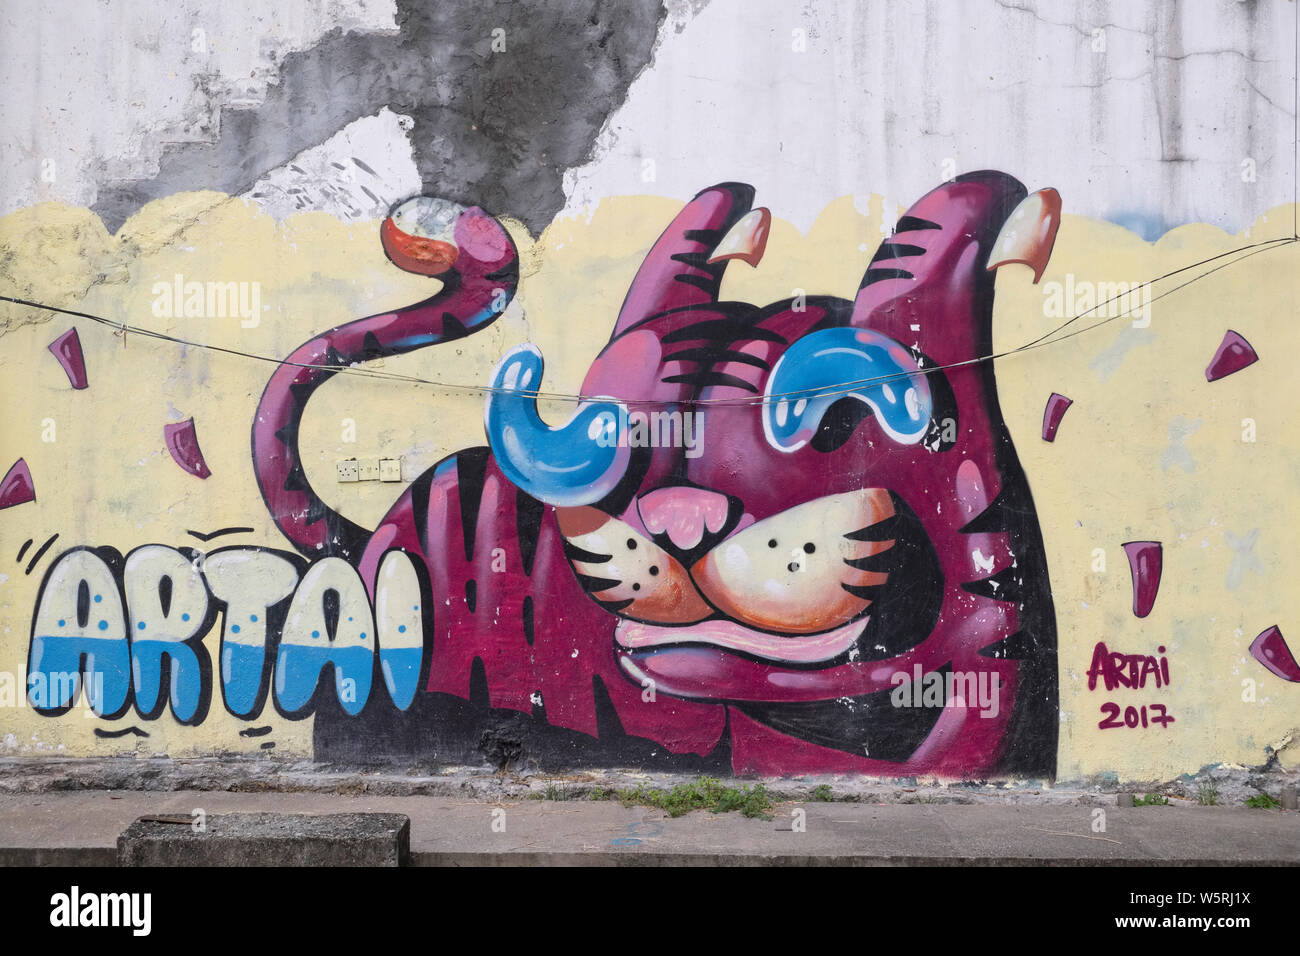 Graffiti Kuala Lumpur High Resolution Stock Photography And Images Alamy